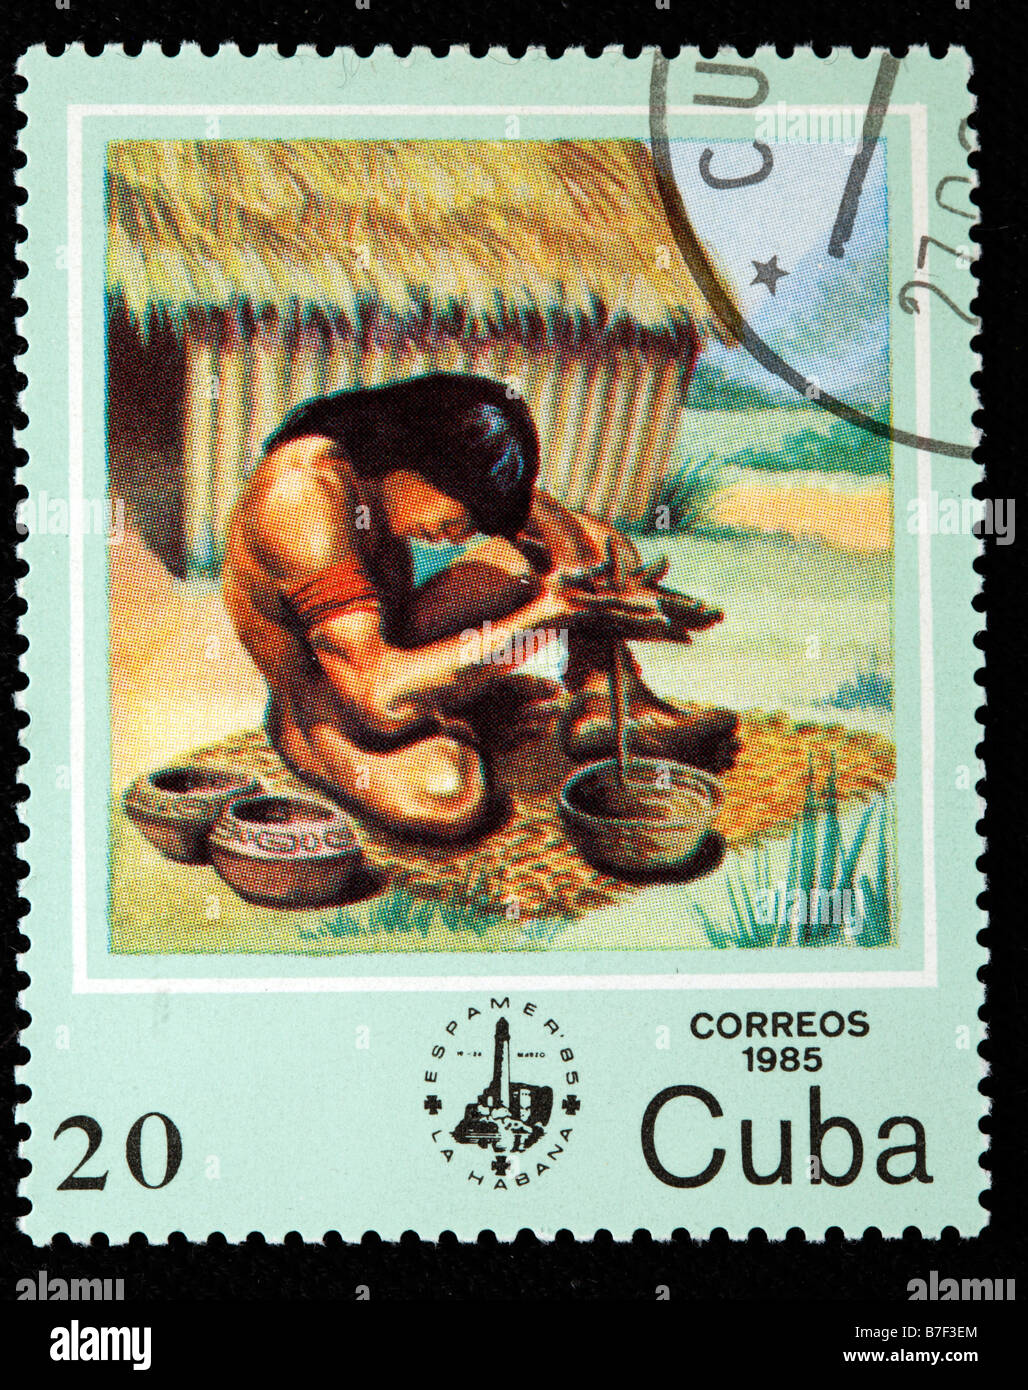 Fire, la vita degli uomini primitivi preistorici savage primordiale, francobollo, Cuba, 1985 Foto Stock